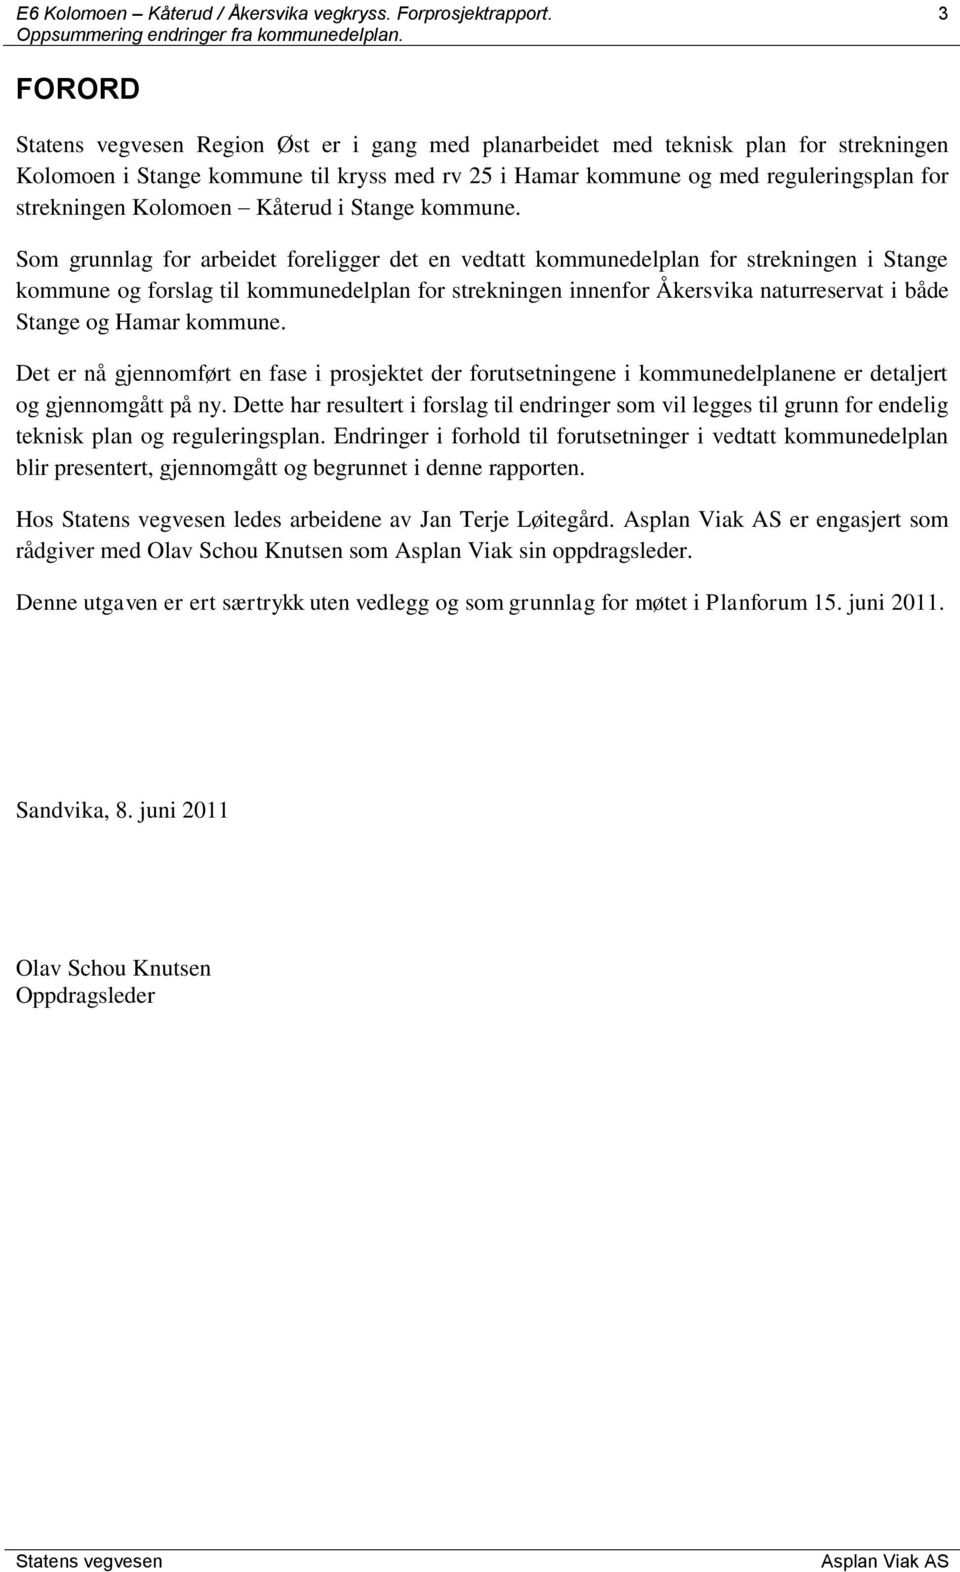 Som grunnlag for arbeidet foreligger det en vedtatt kommunedelplan for strekningen i Stange kommune og forslag til kommunedelplan for strekningen innenfor Åkersvika naturreservat i både Stange og